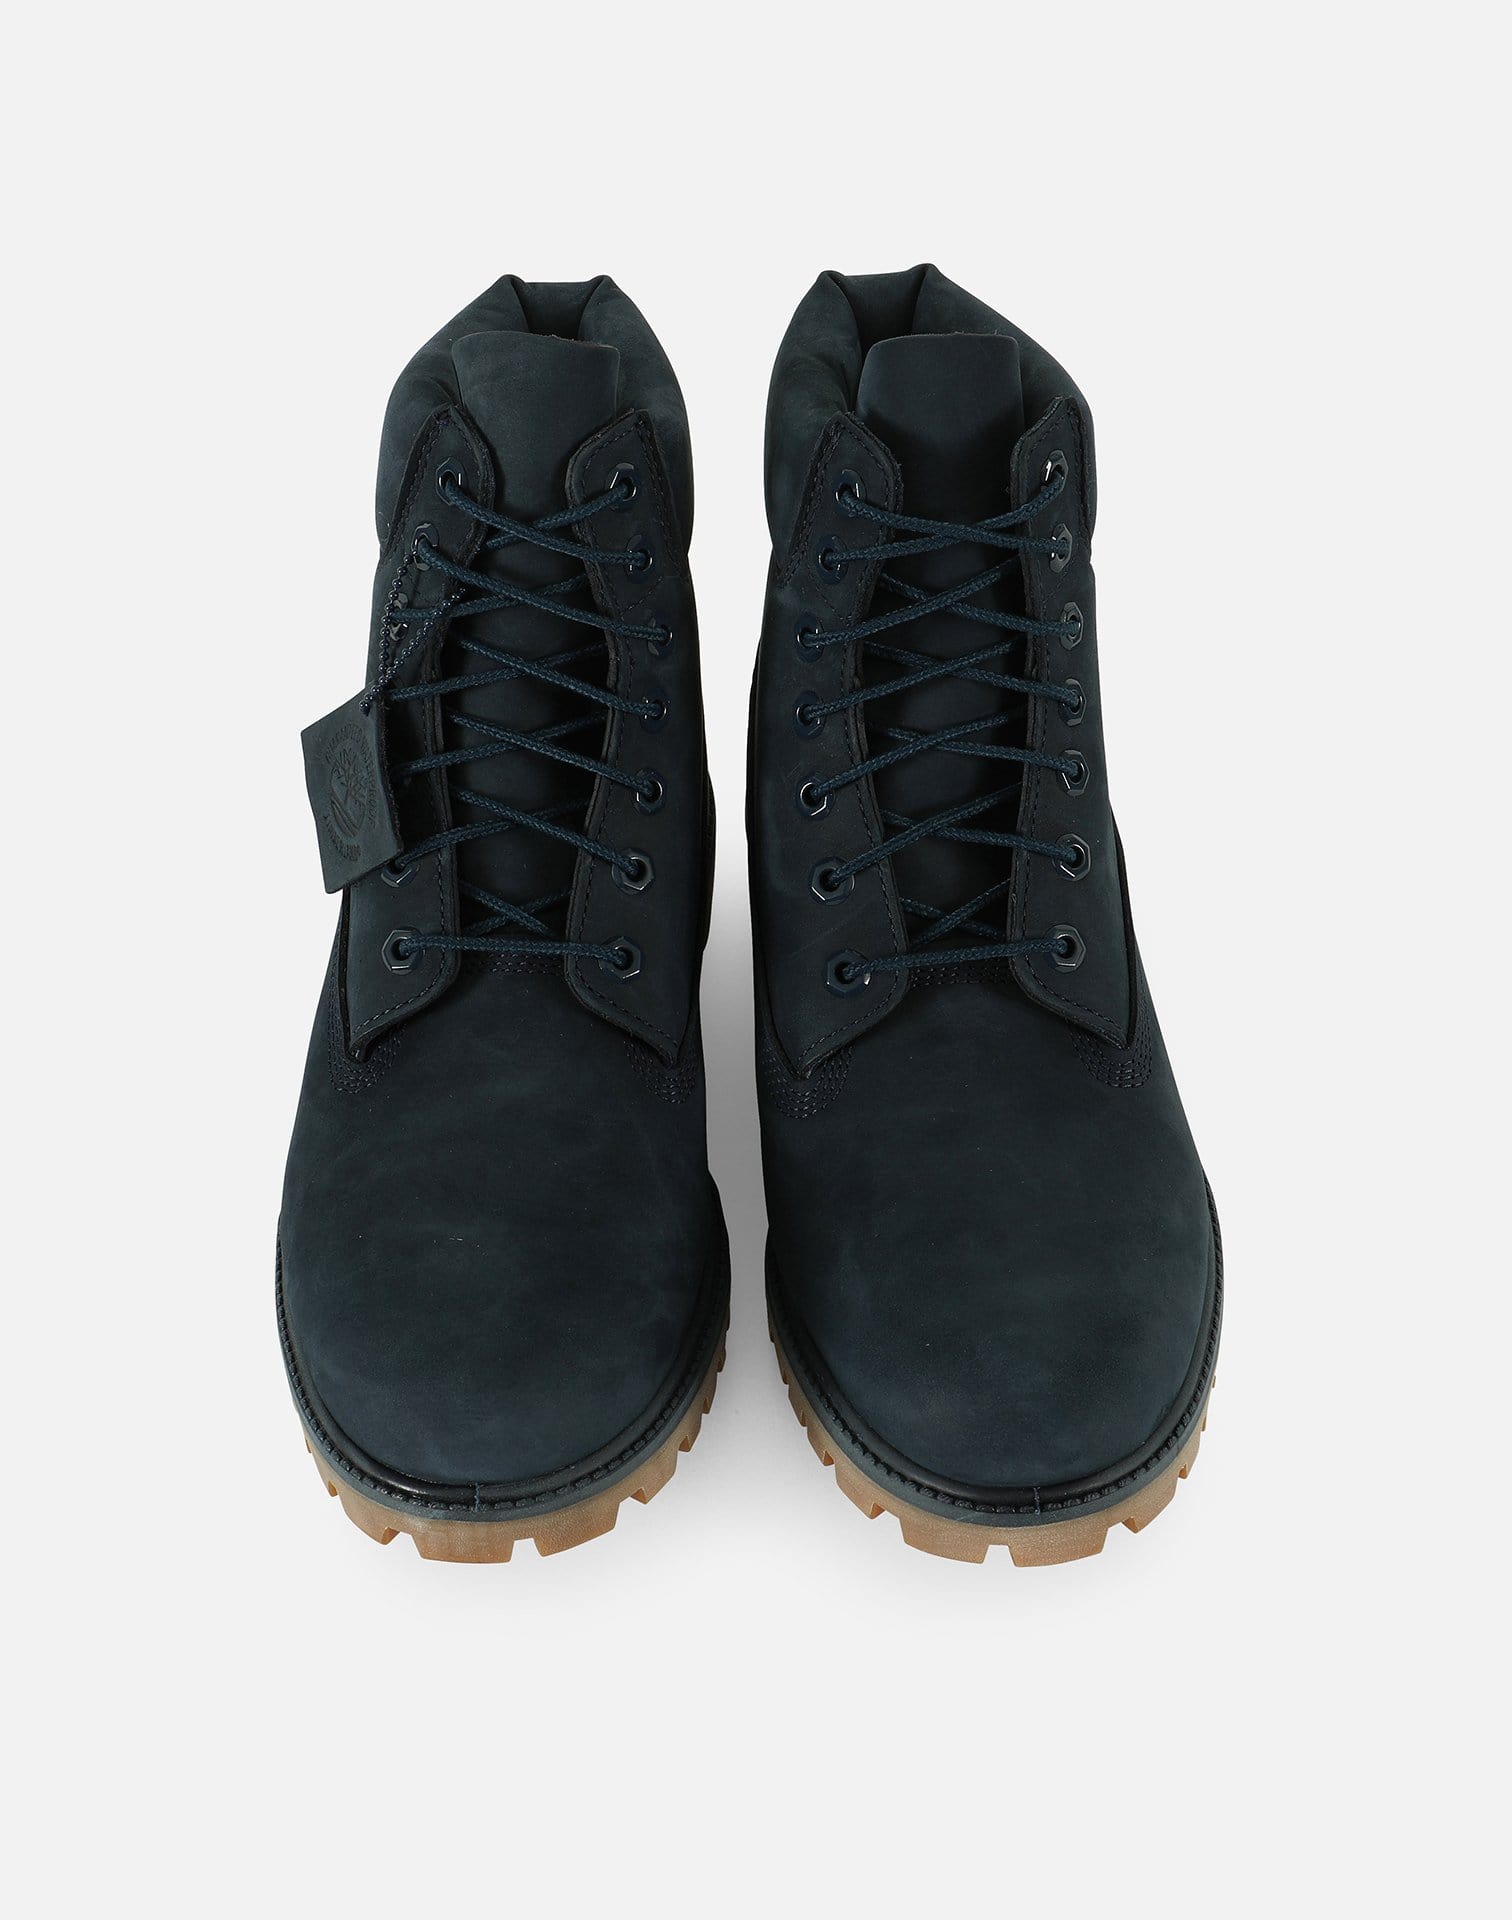 Timberland Men's 6" Premium Waterproof Boots